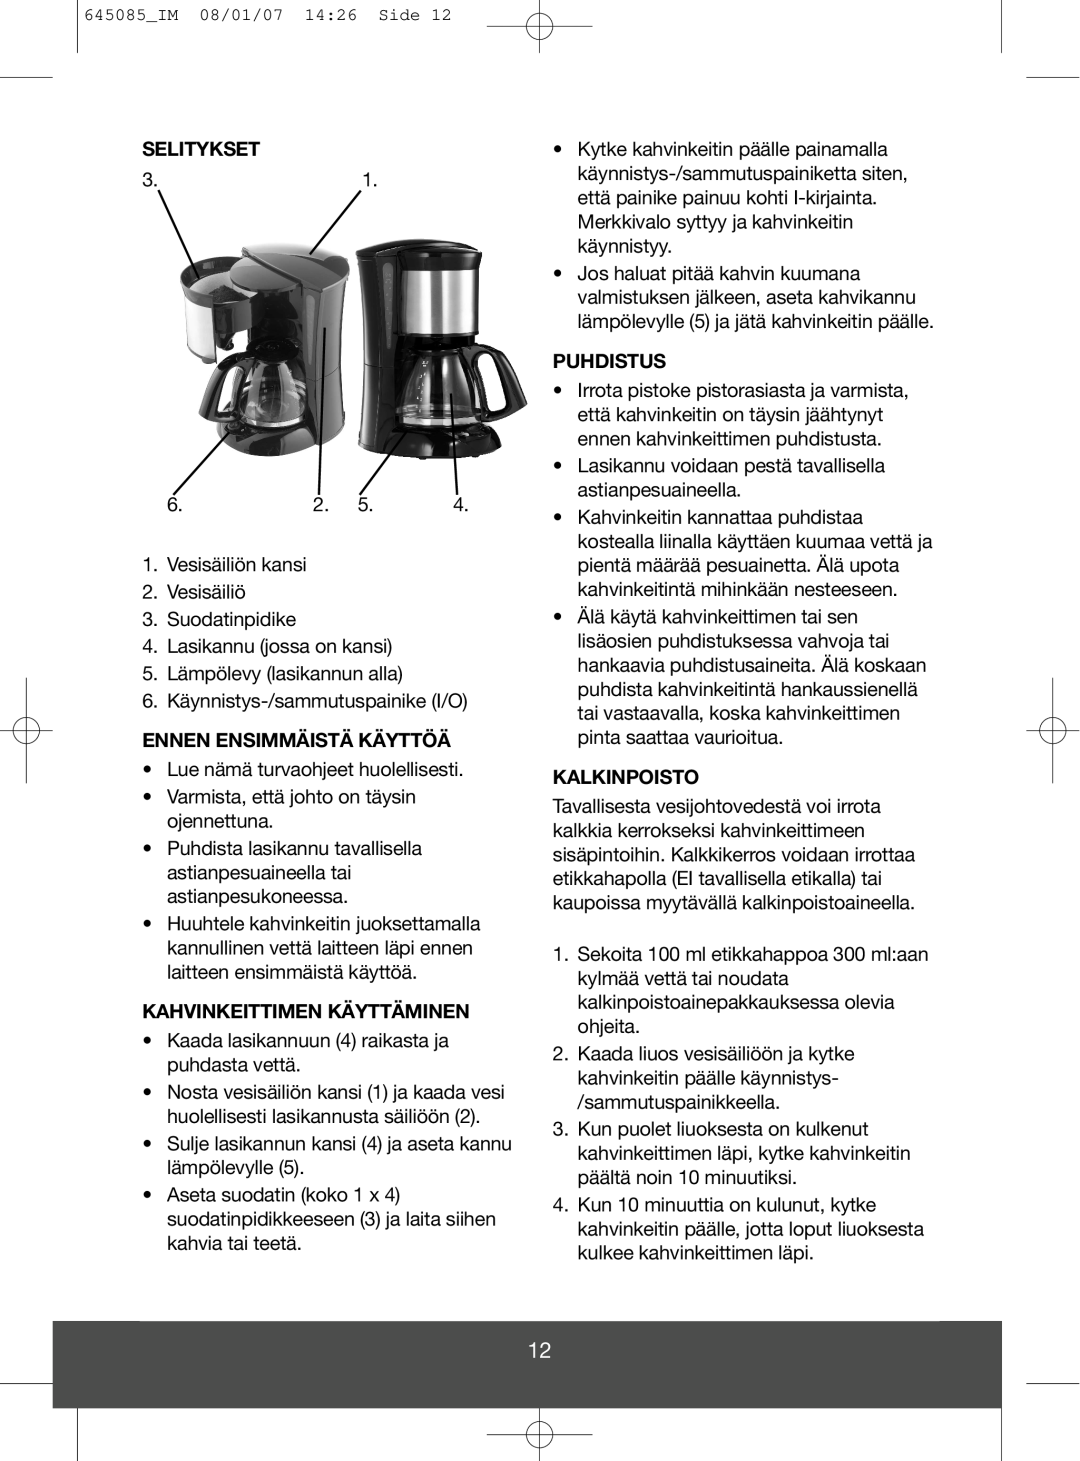 Butler 645-260 manual Selitykset, Ennen Ensimmäistä Käyttöä, Kahvinkeittimen Käyttäminen, Puhdistus, Kalkinpoisto 